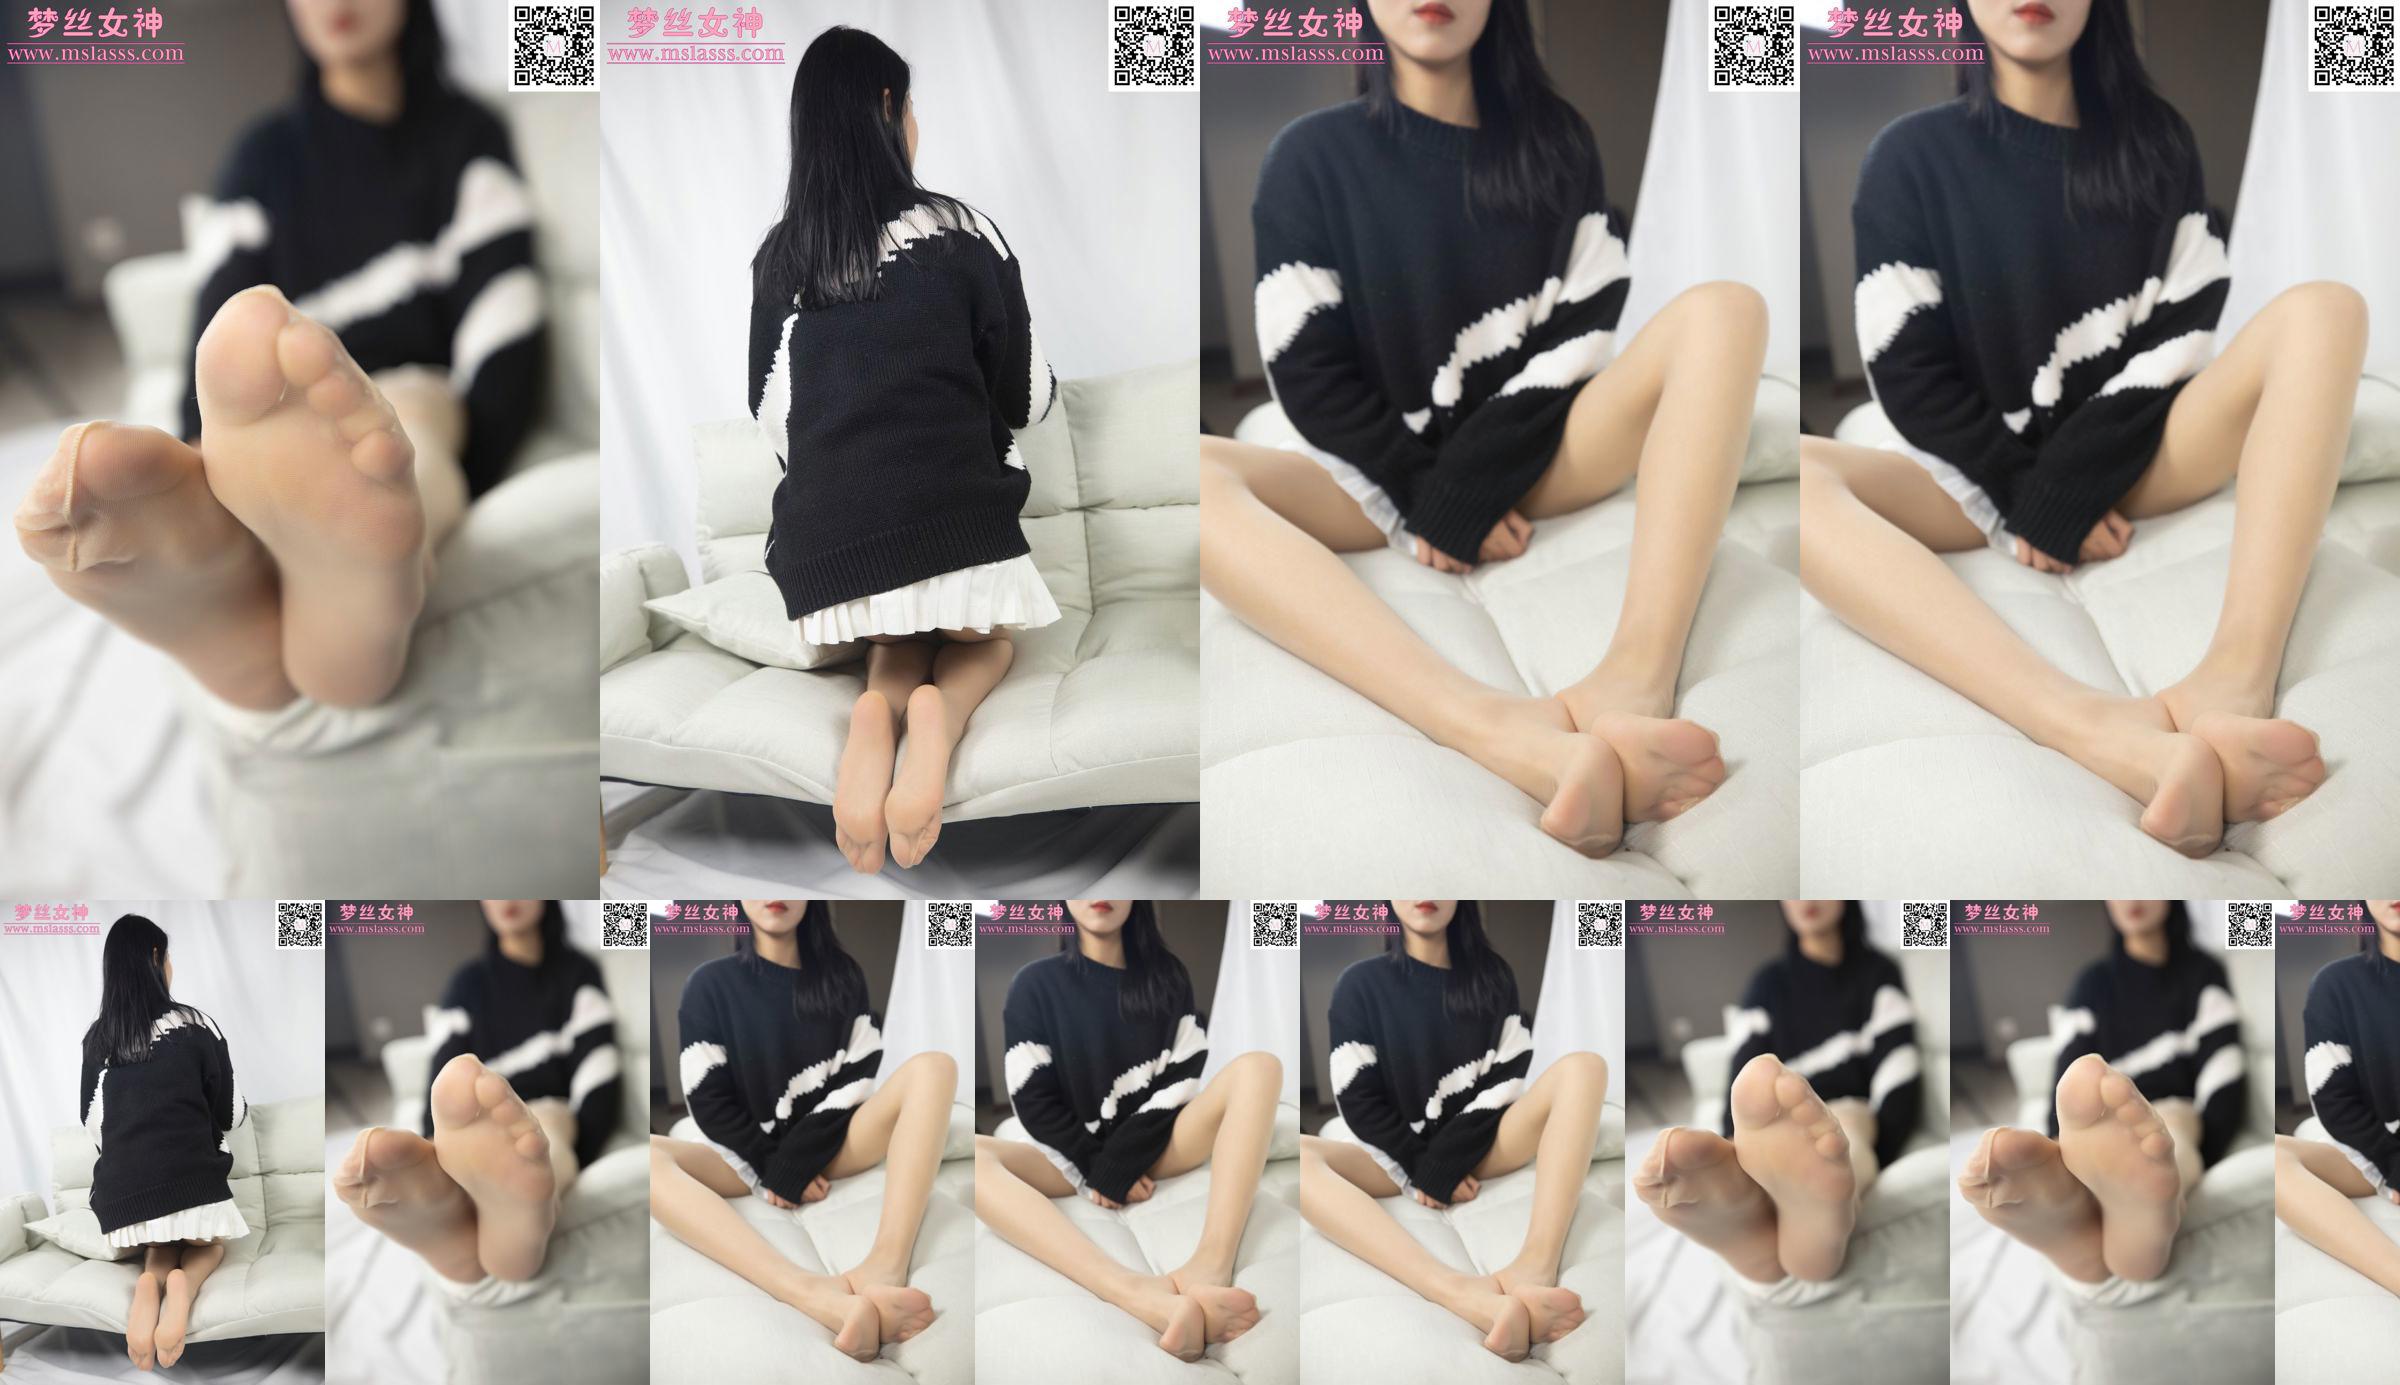 [Goddess of Dreams MSLASS] Sweater Xiaomu tidak bisa menghentikan kakinya yang panjang No.876a74 Halaman 32